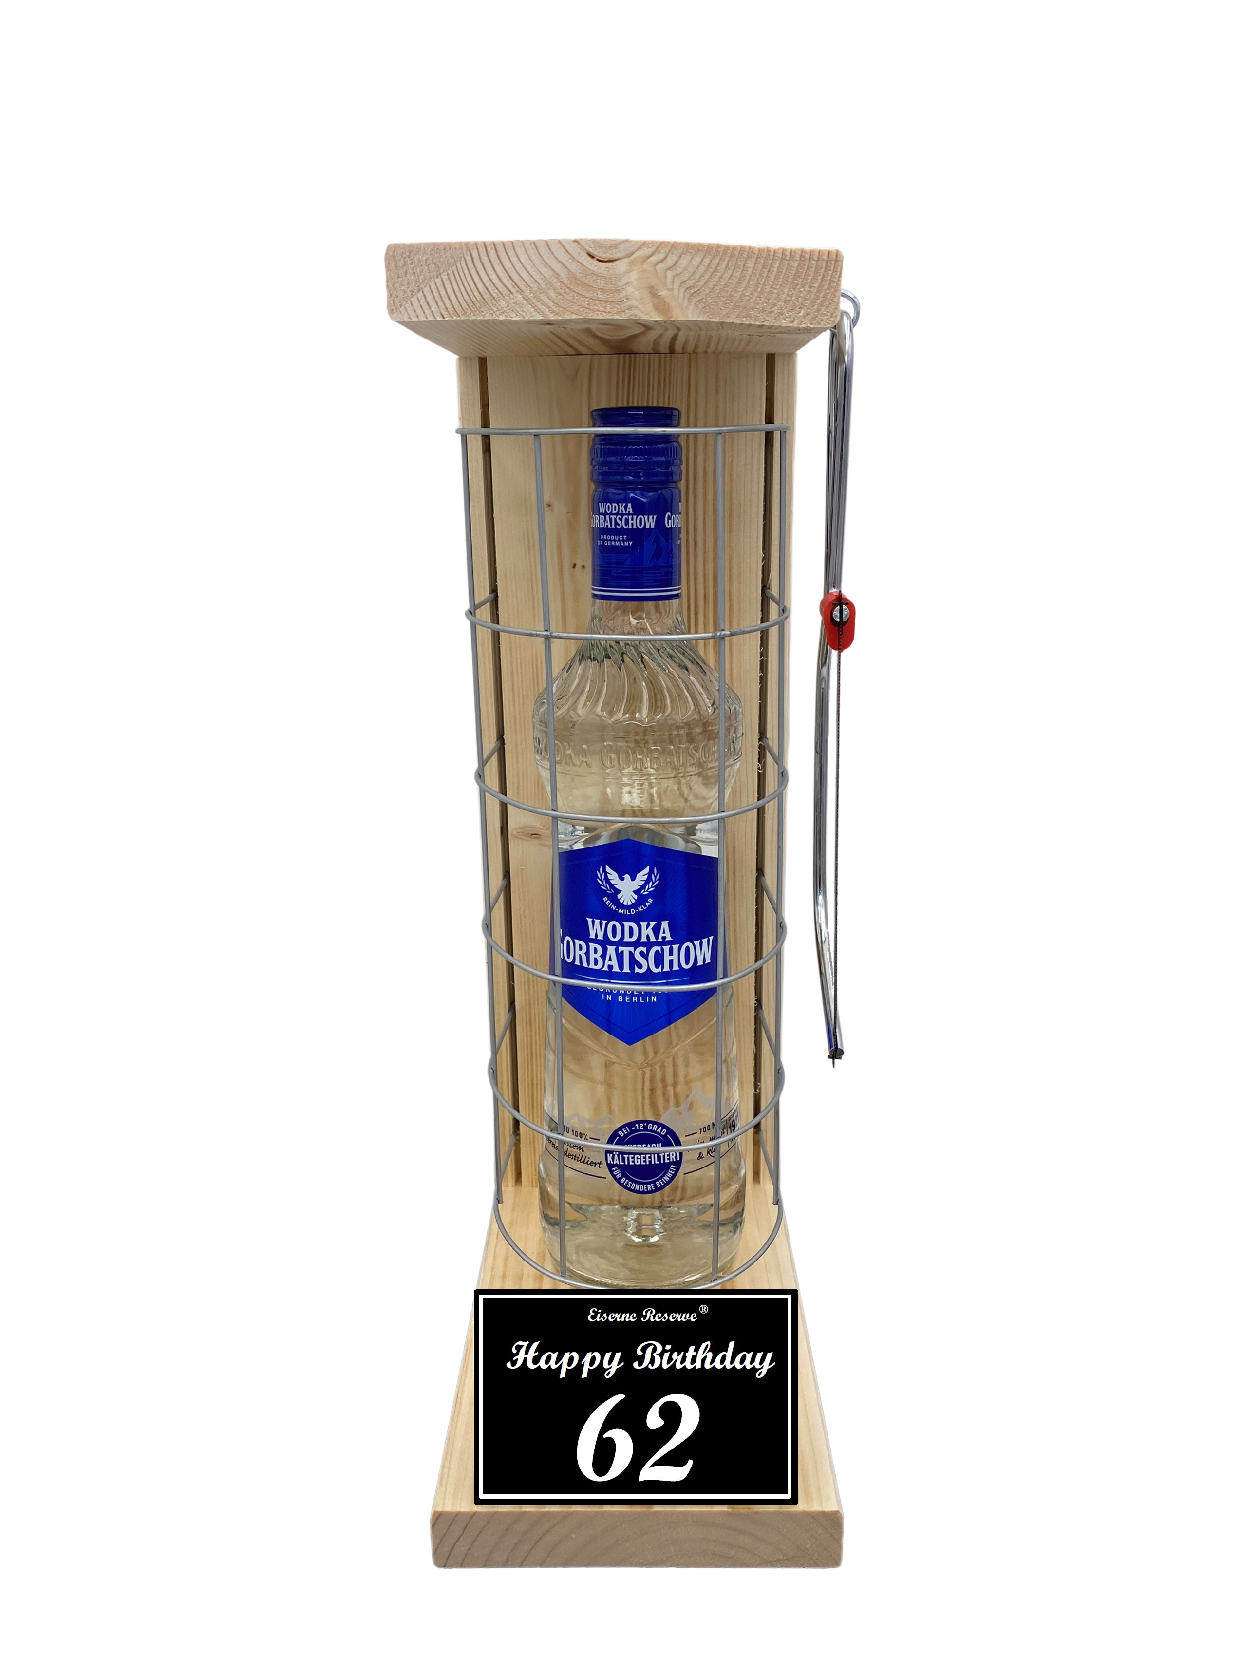 Wodka Geschenk zum 62 Geburtstag - Eiserne Reserve Gitterkäfig